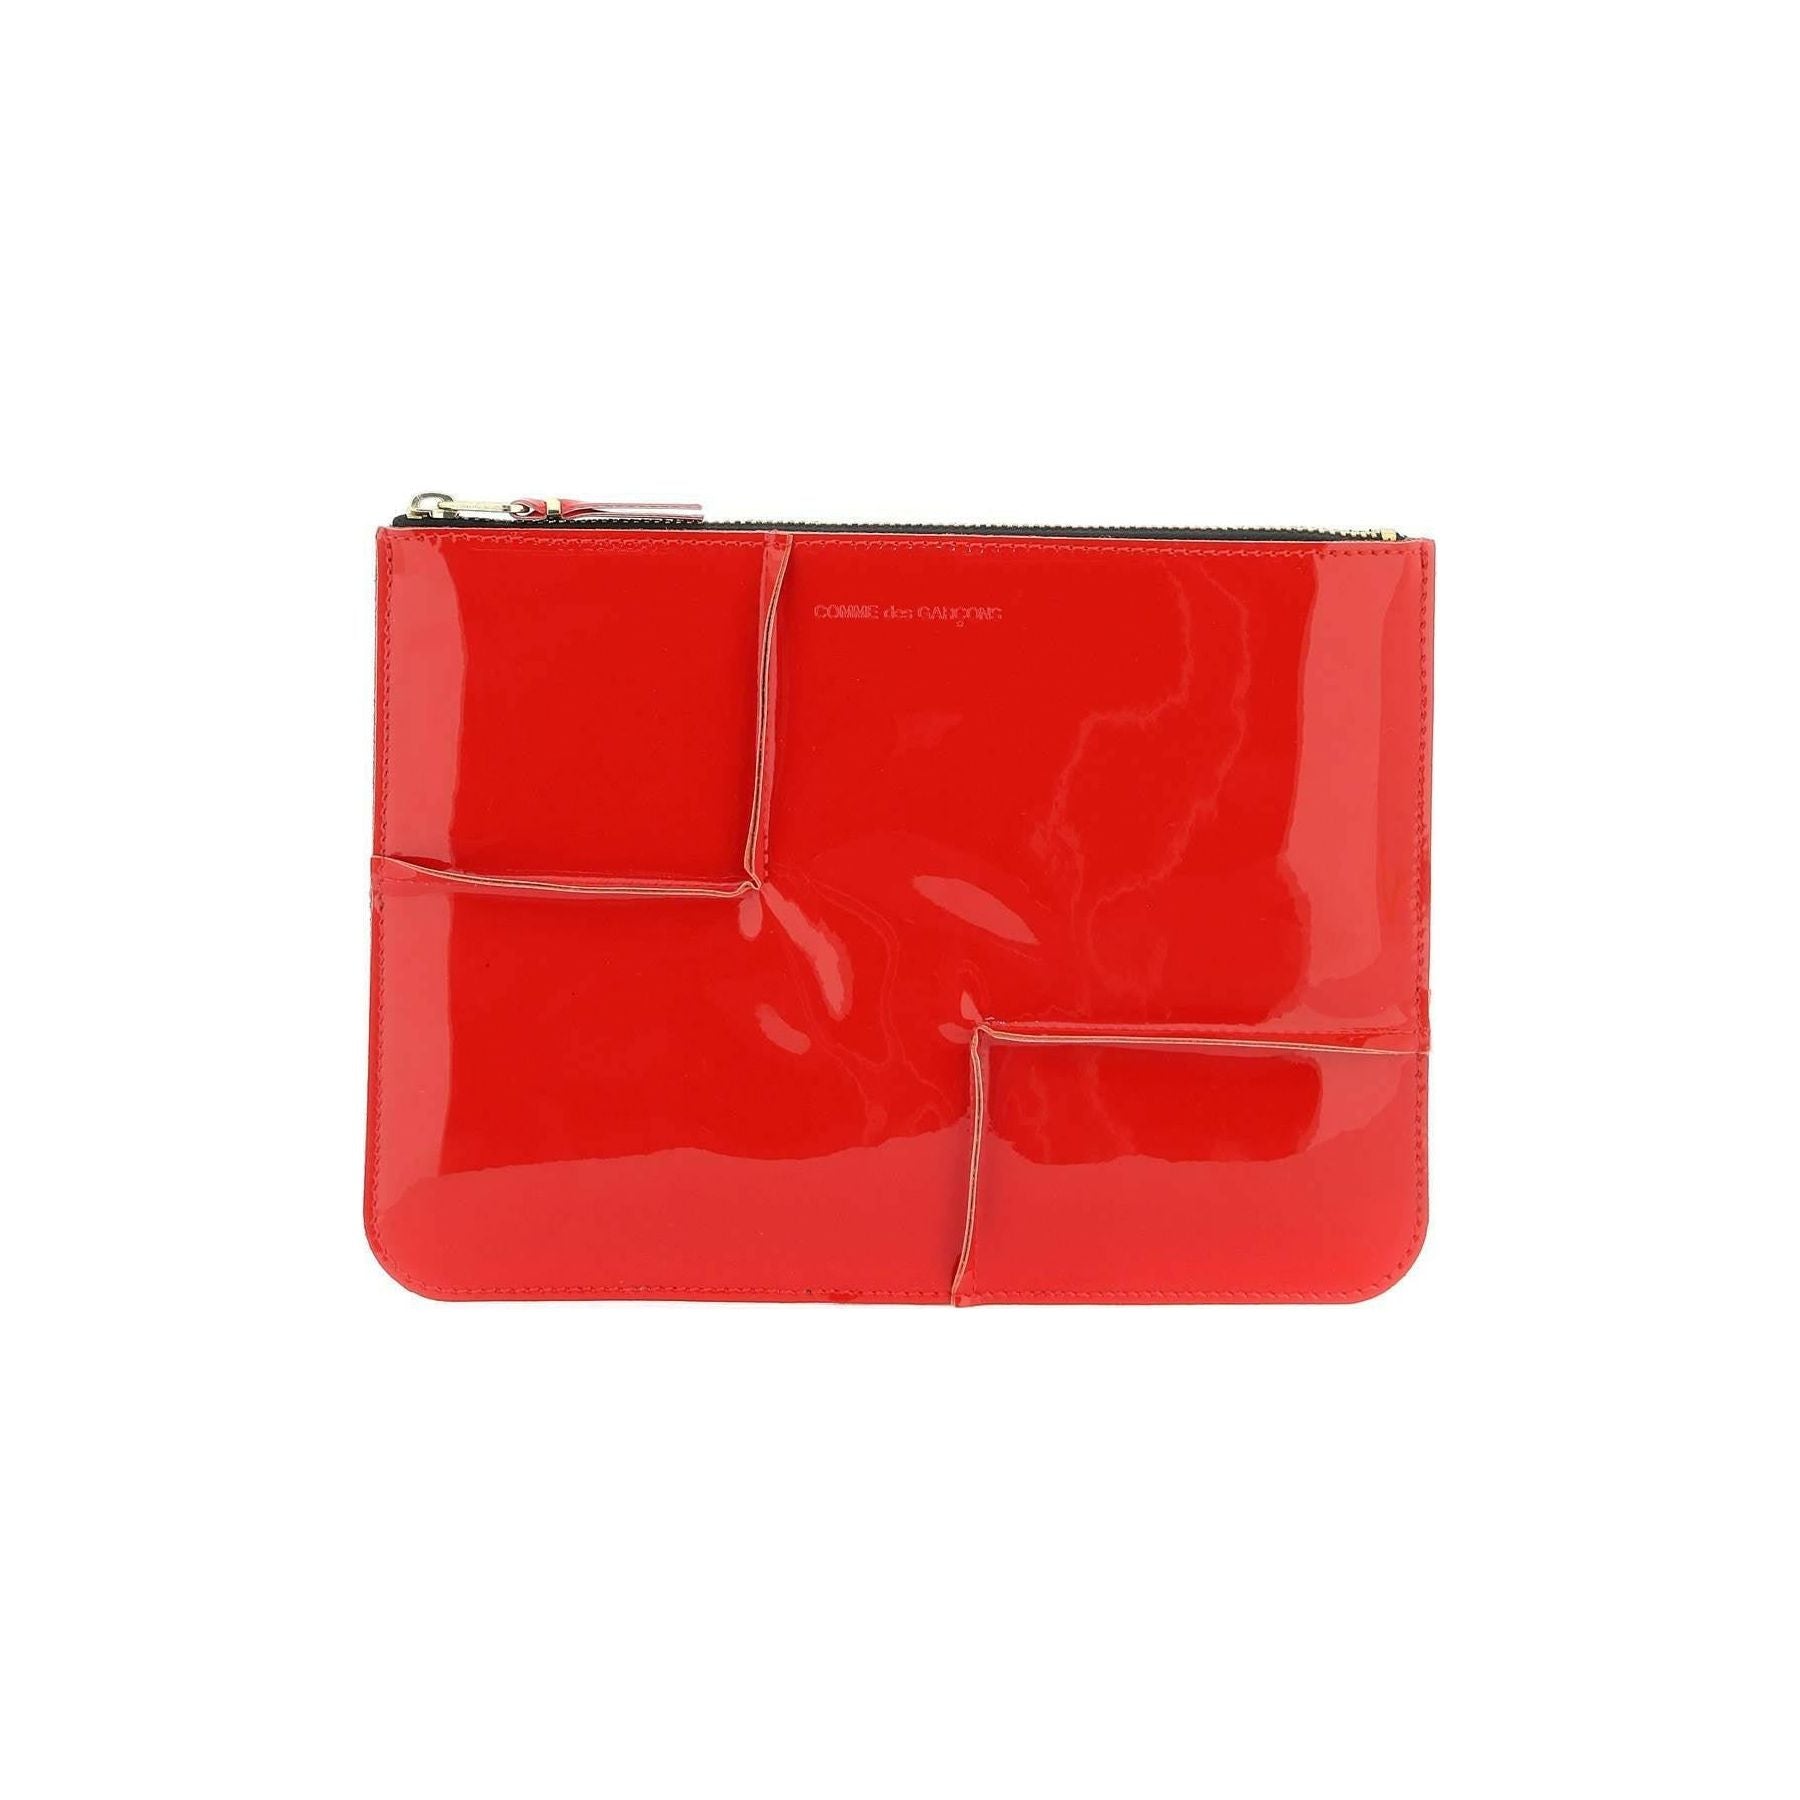 Comme des Garçons Red Glossy Patent Leather Pouch COMME DES GARCONS WALLET JOHN JULIA.